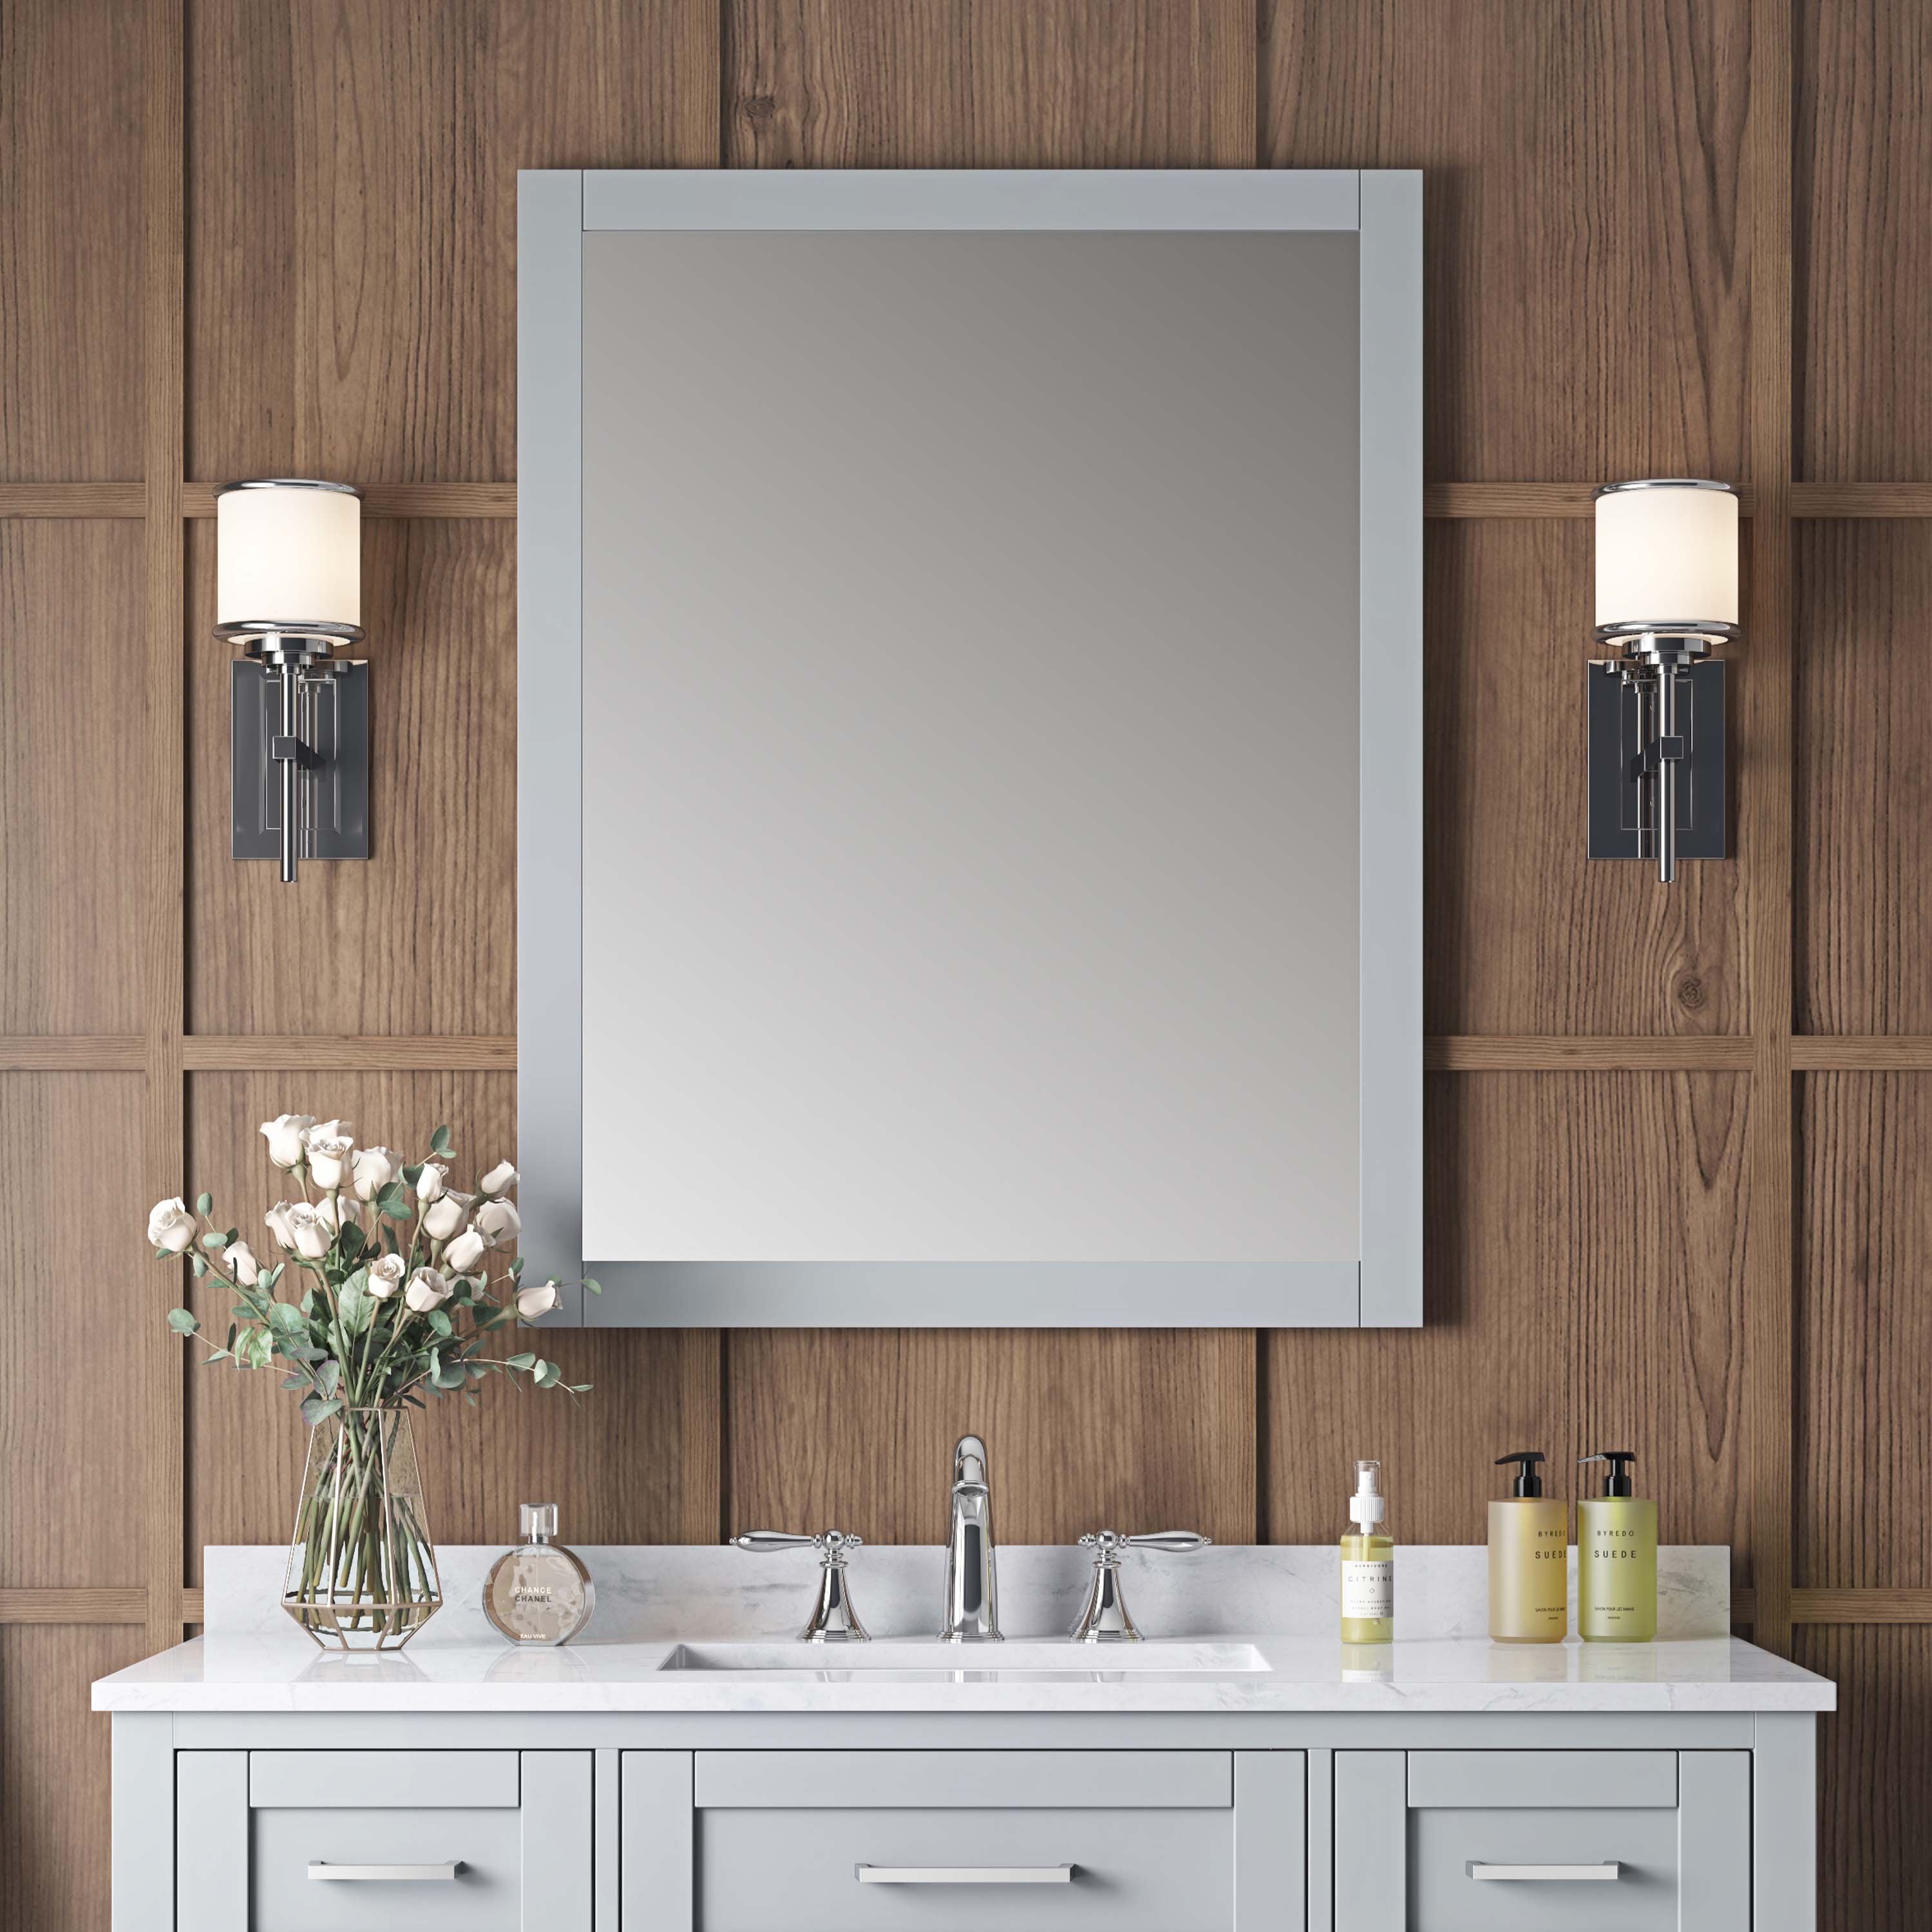 OVE Decors Tahoe 28-in W x 36-in H Dove Gray Rectangular Framed Bathroom Vanity Mirror